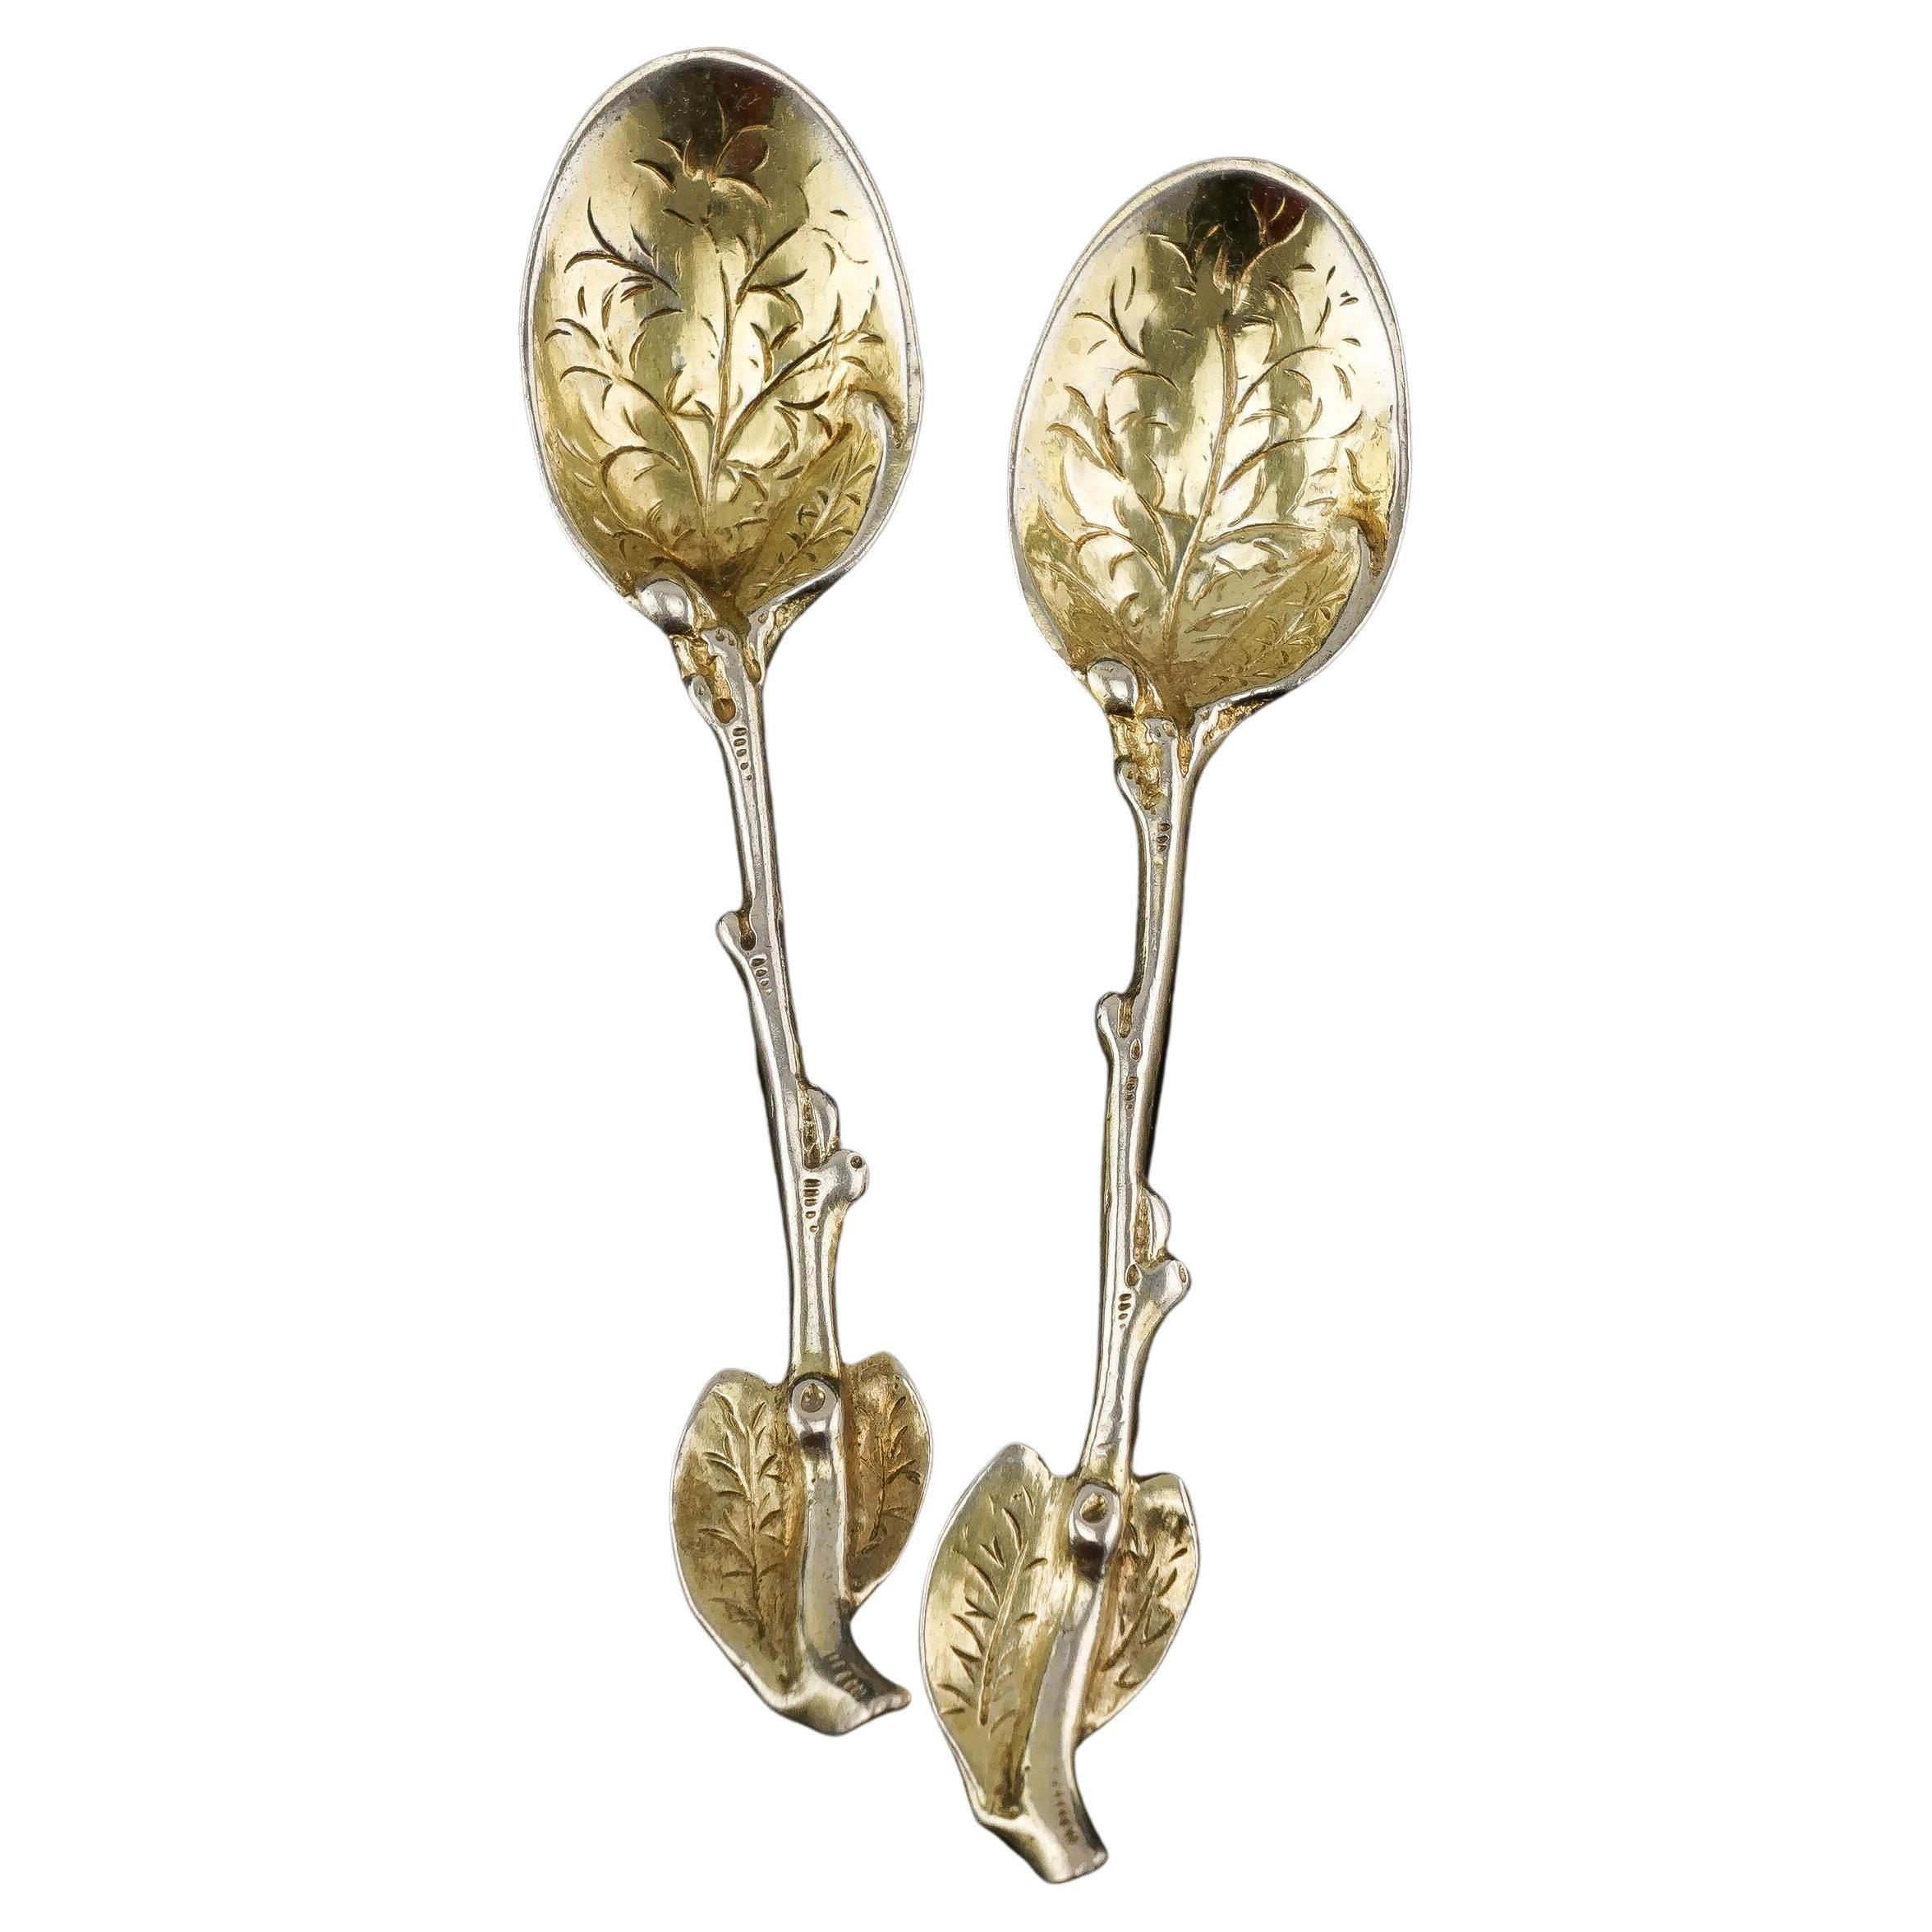 Ancienne paire de cuillères victoriennes en argent massif doré à feuilles naturalistes, 1842